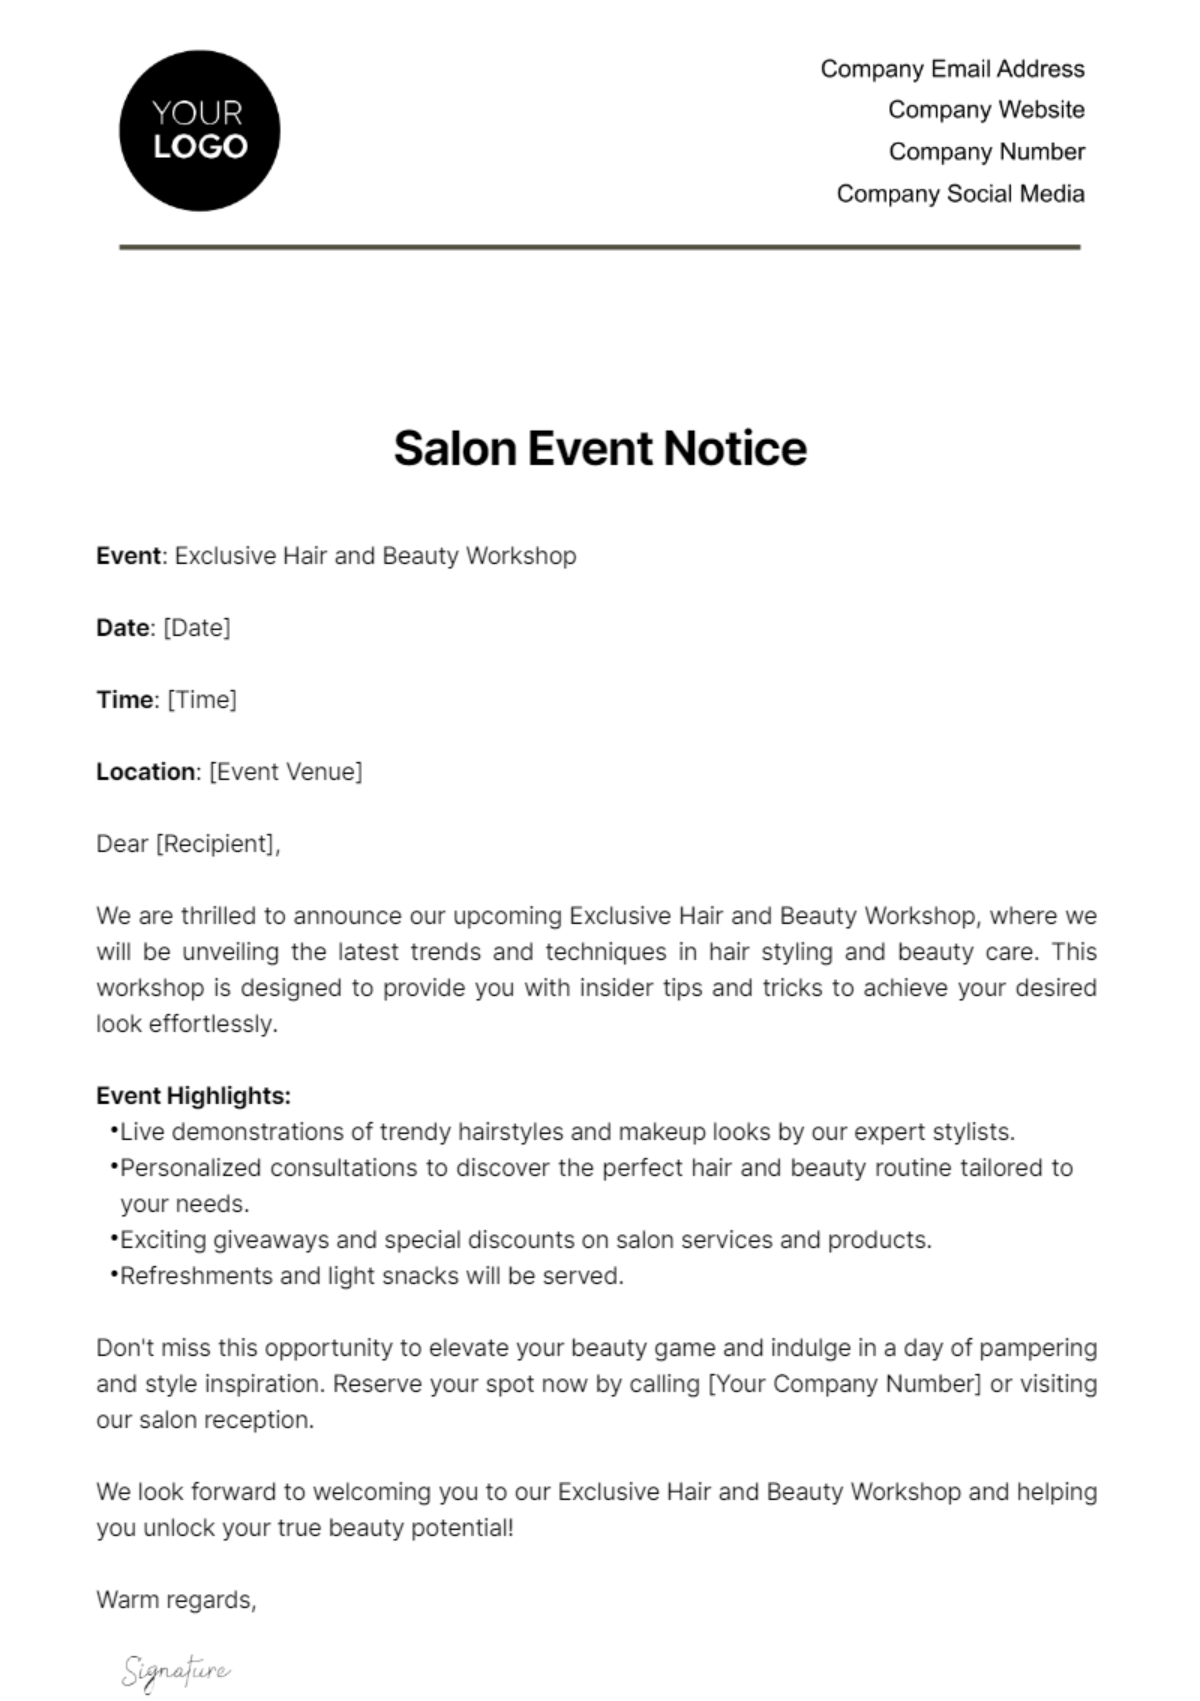 Salon Event Notice Template